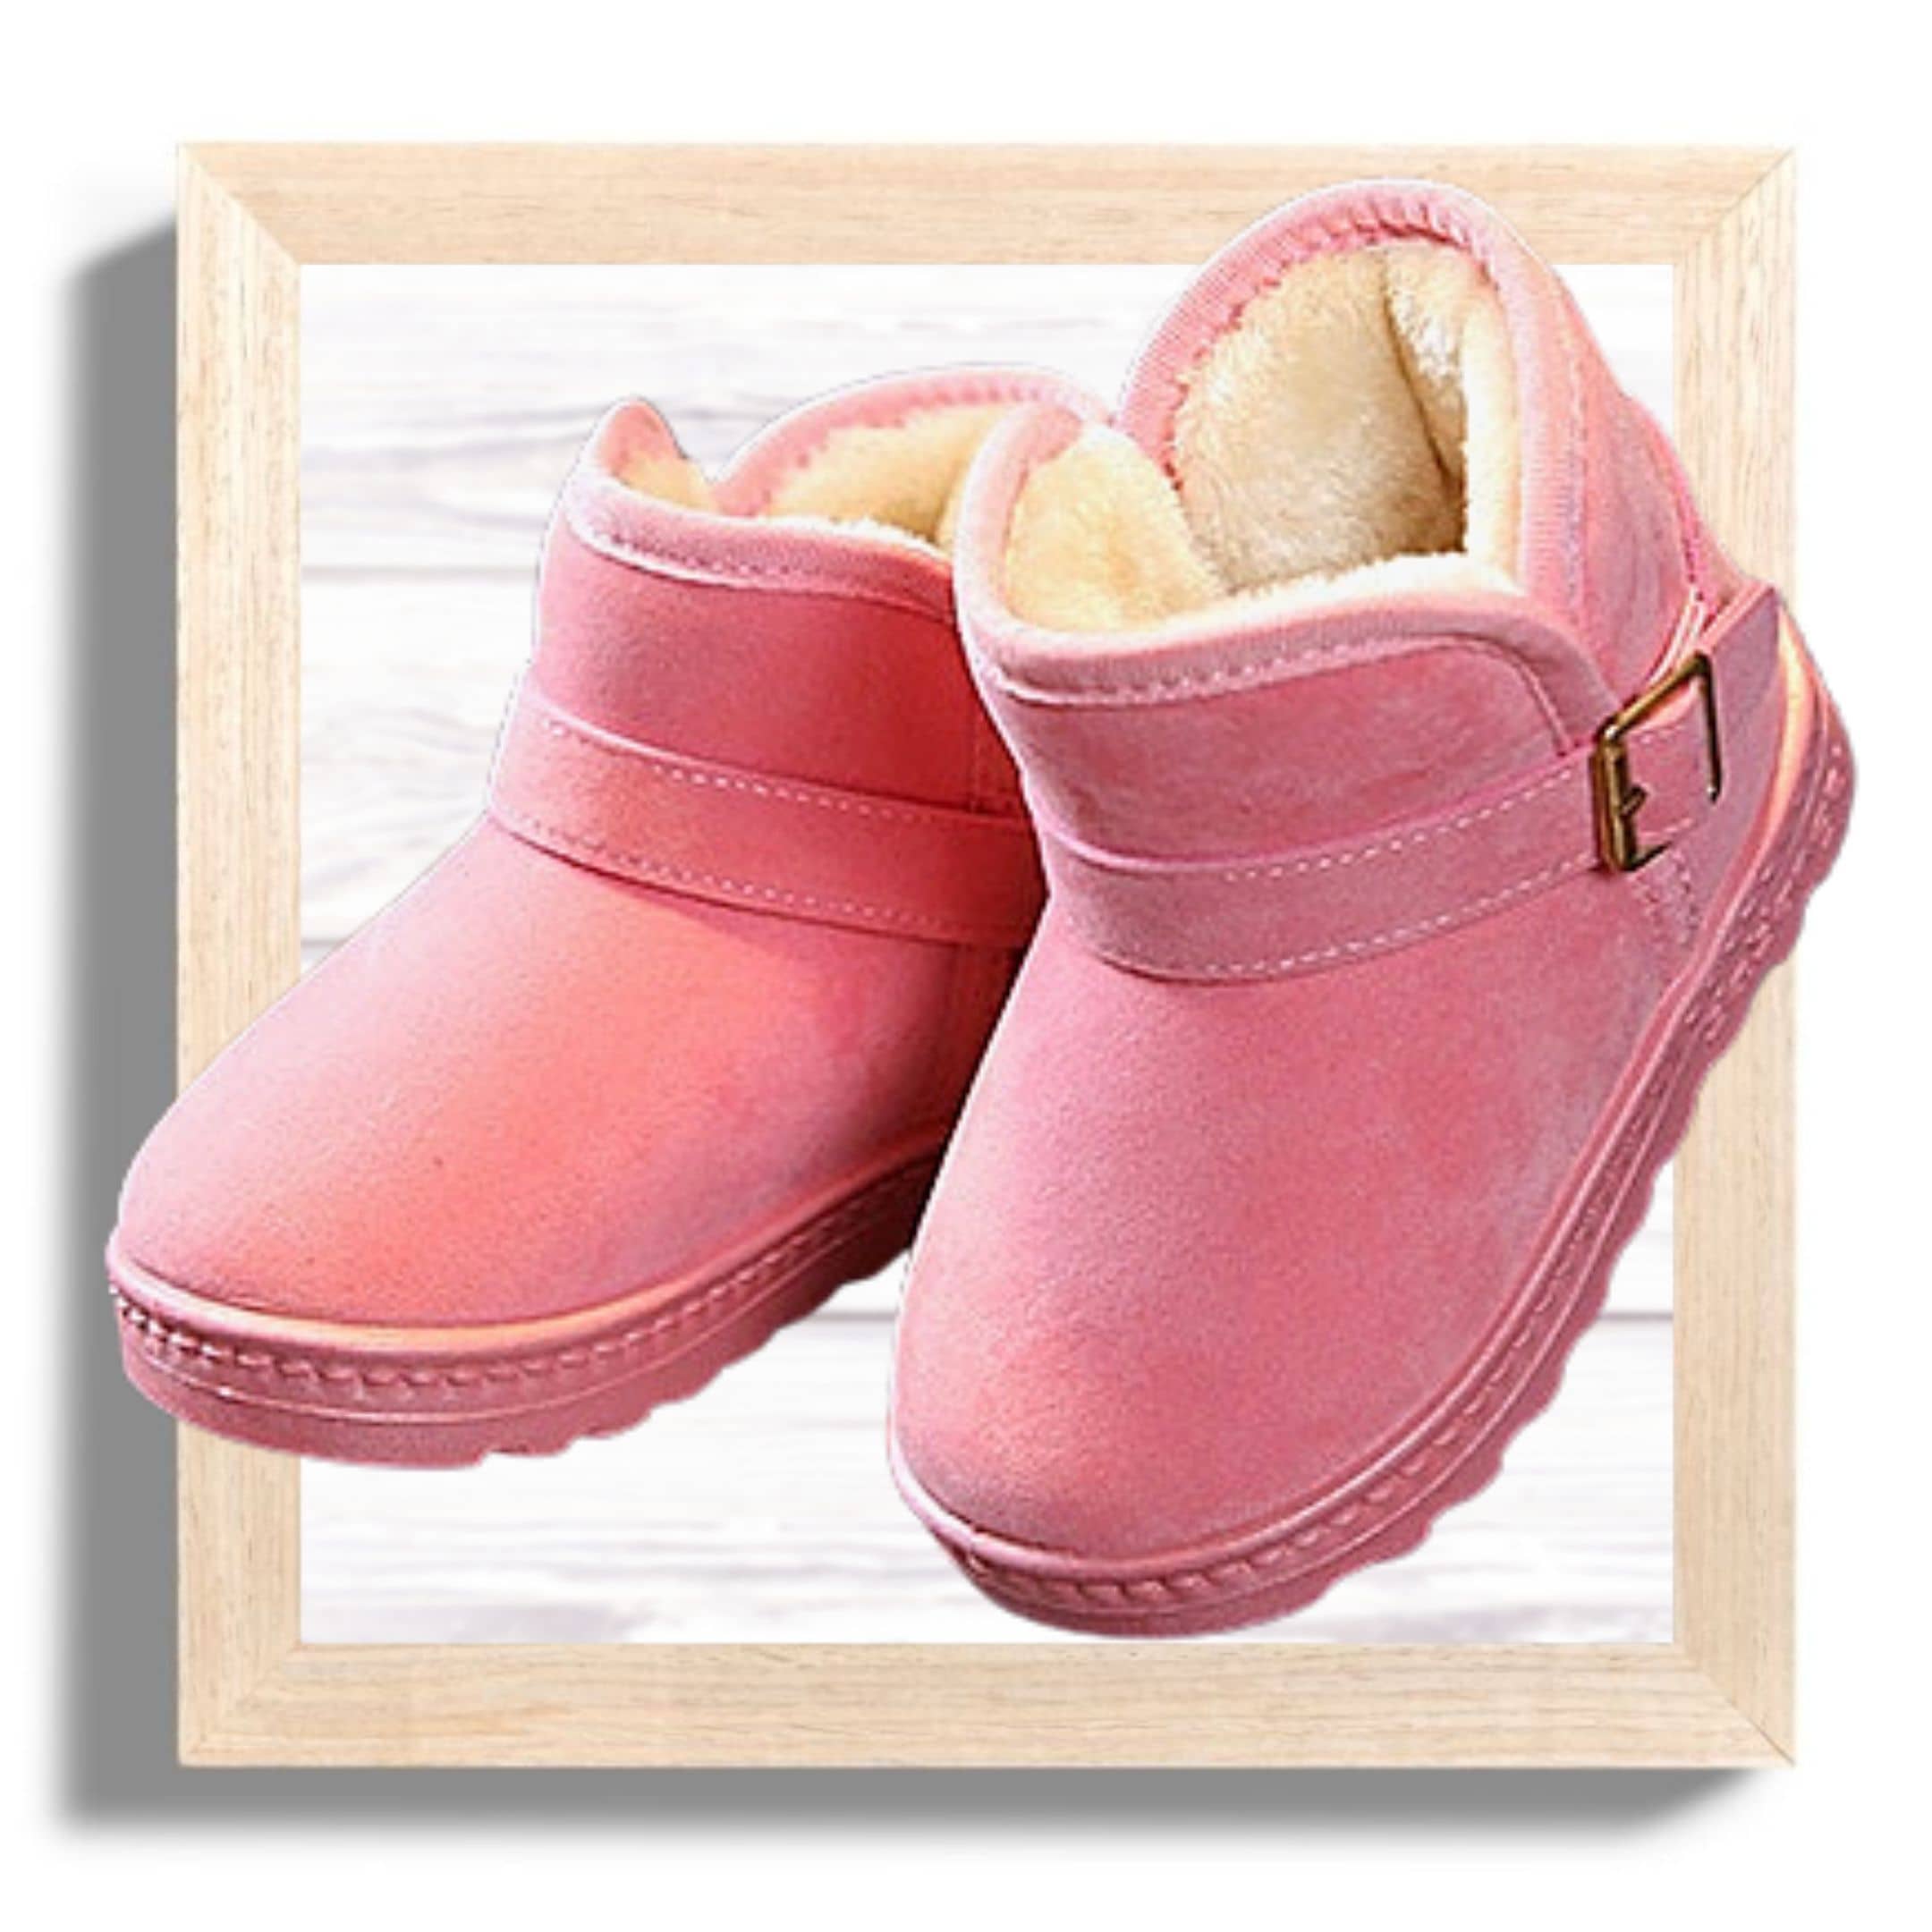 kids-winter-boots